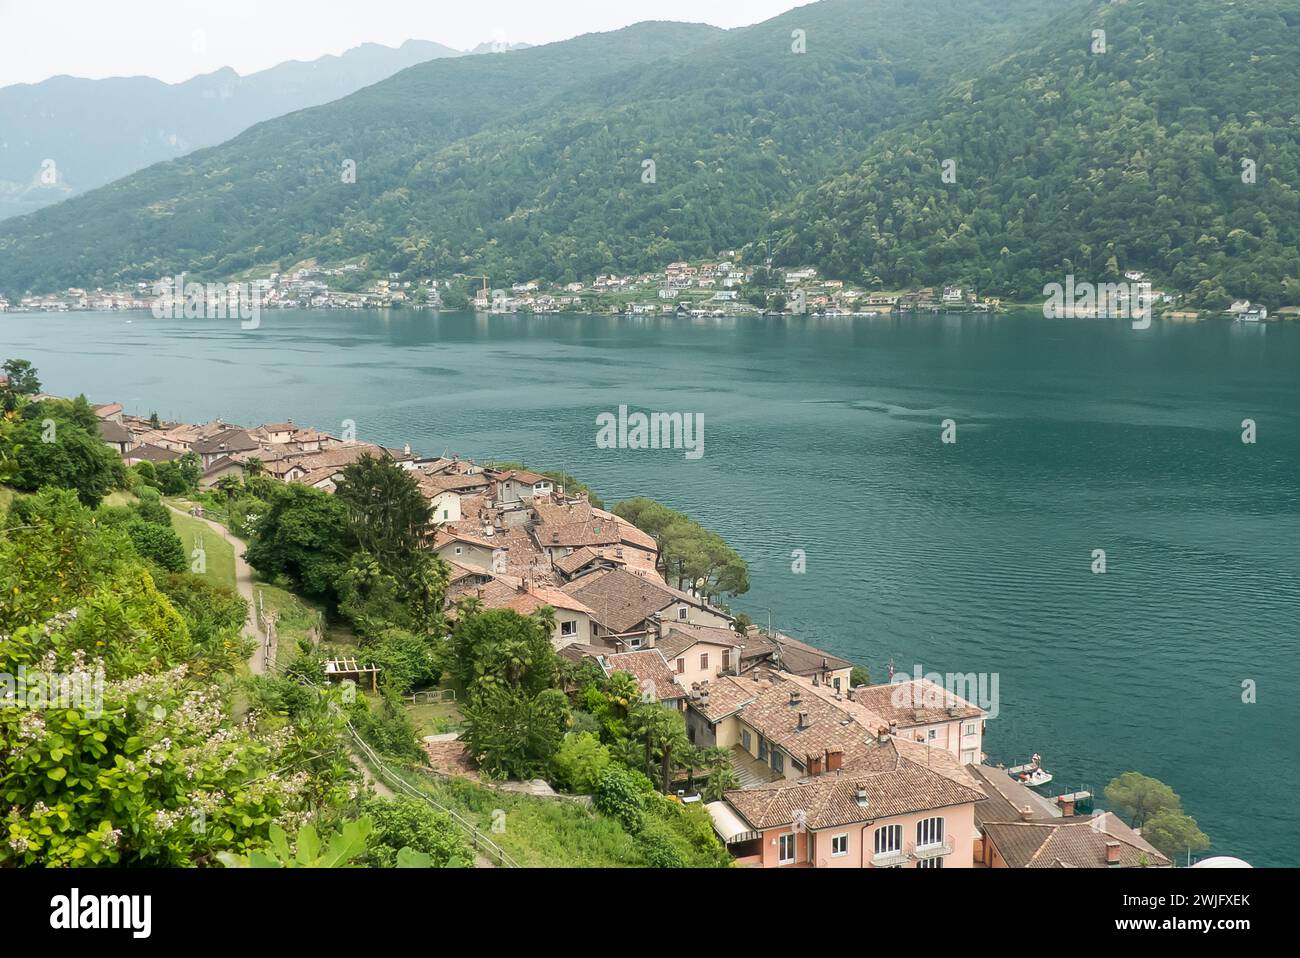 Lake Lugano in Switzerland: the pretty village of Morecote. Stock Photo